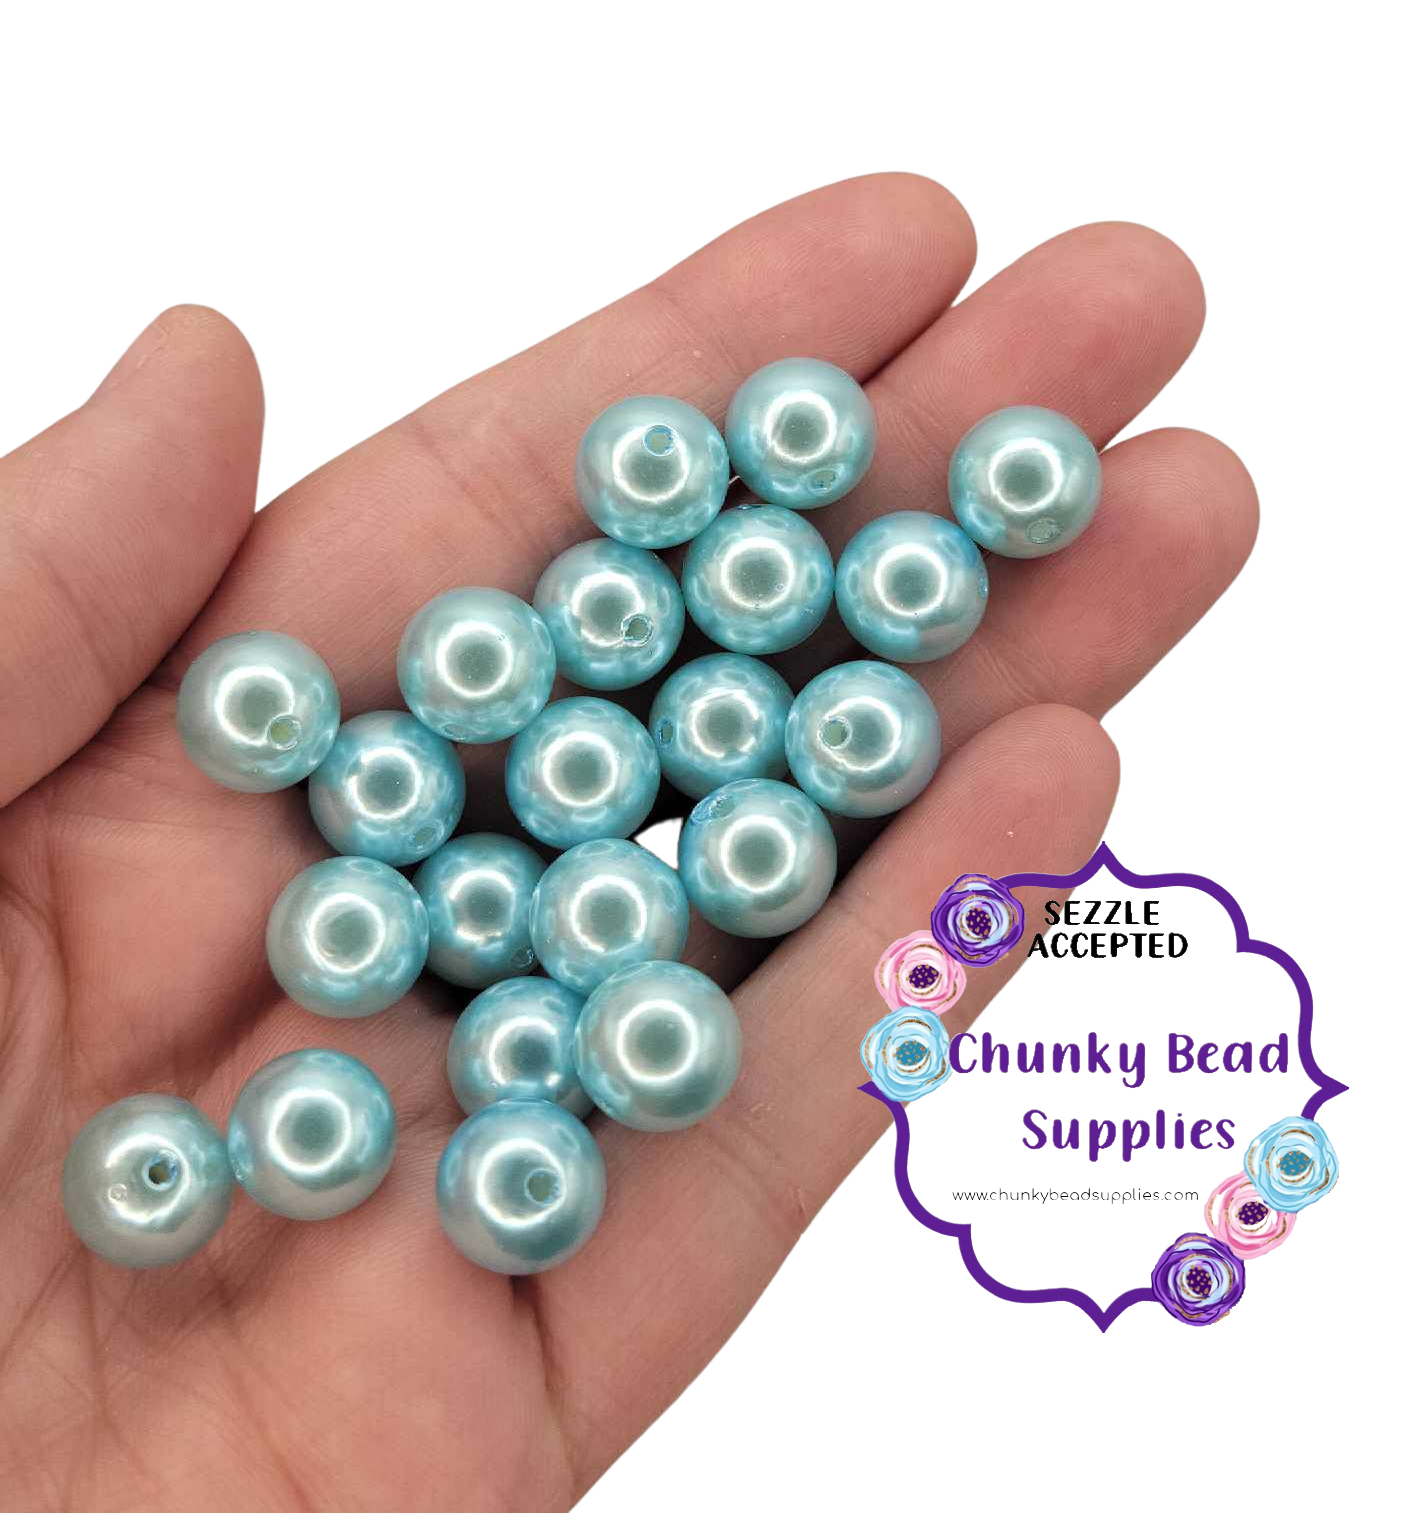 Cuentas de perlas acrílicas "azul campo" de 12 mm